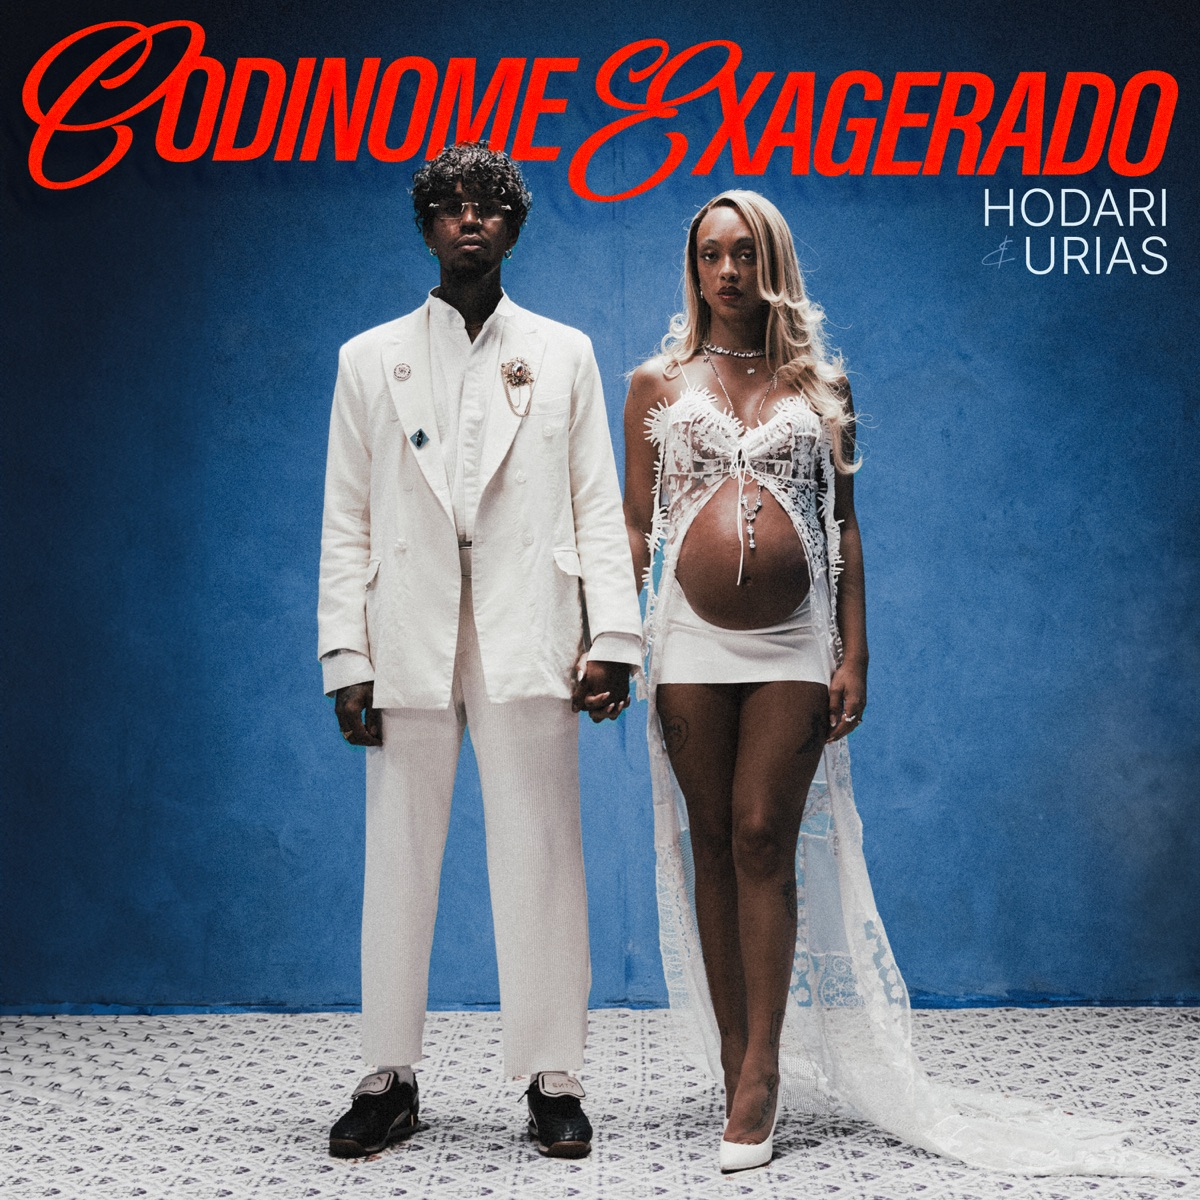 Hodari & Urias — Codinome Exagerado cover artwork